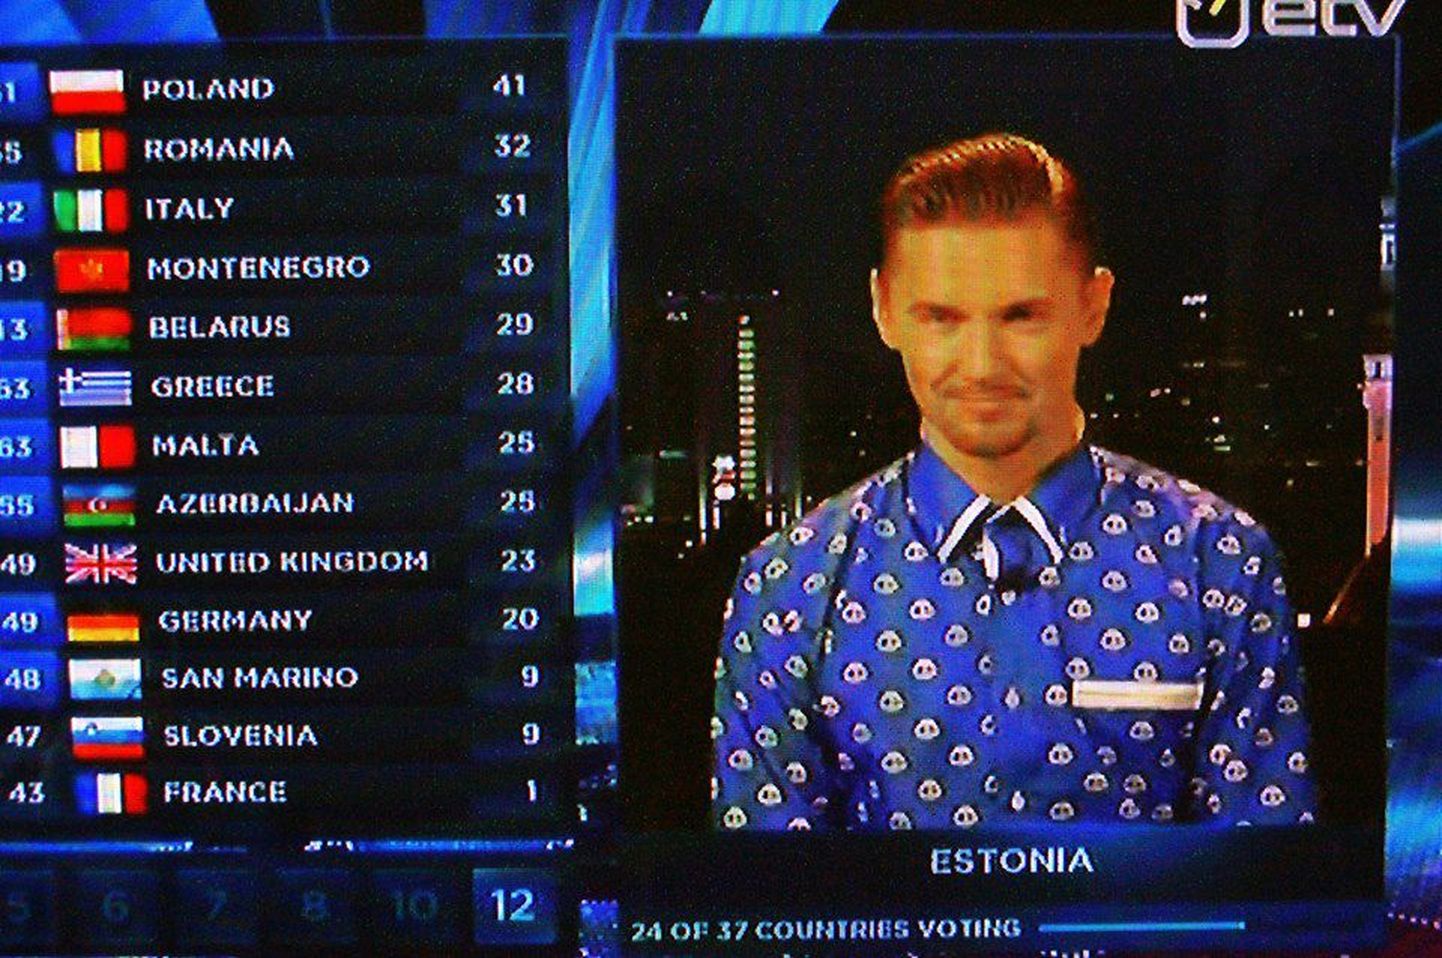 Lauri Pihlap kandis Eurovisioonil punkte teadustades Rauno Märksi disainitud särki